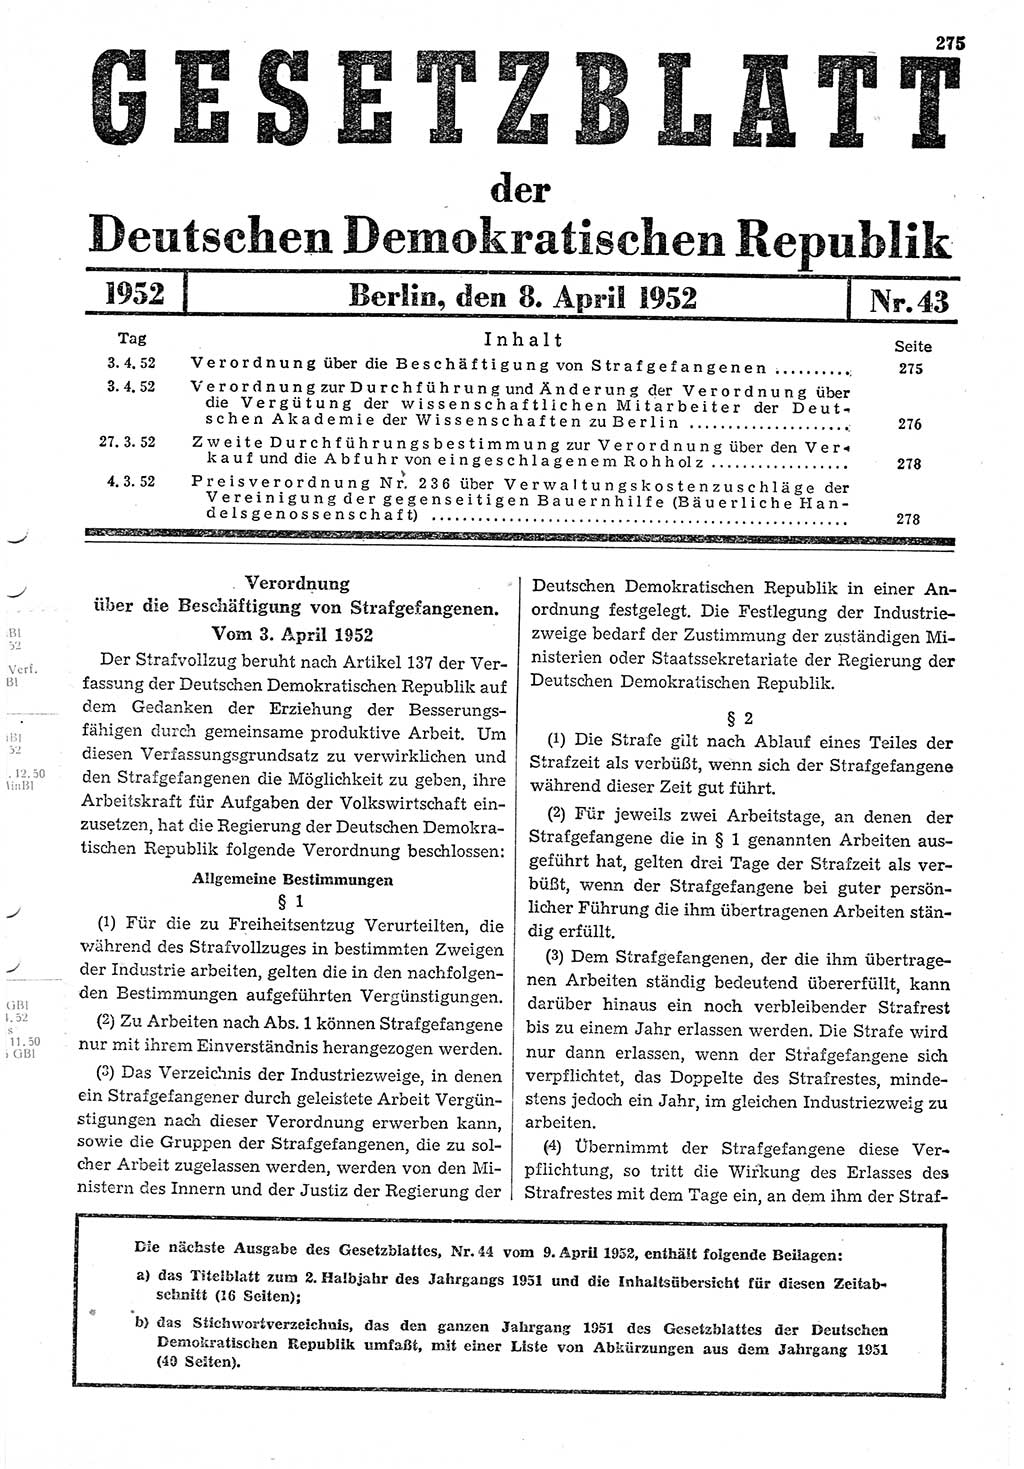 Gesetzblatt (GBl.) der Deutschen Demokratischen Republik (DDR) 1952, Seite 275 (GBl. DDR 1952, S. 275)